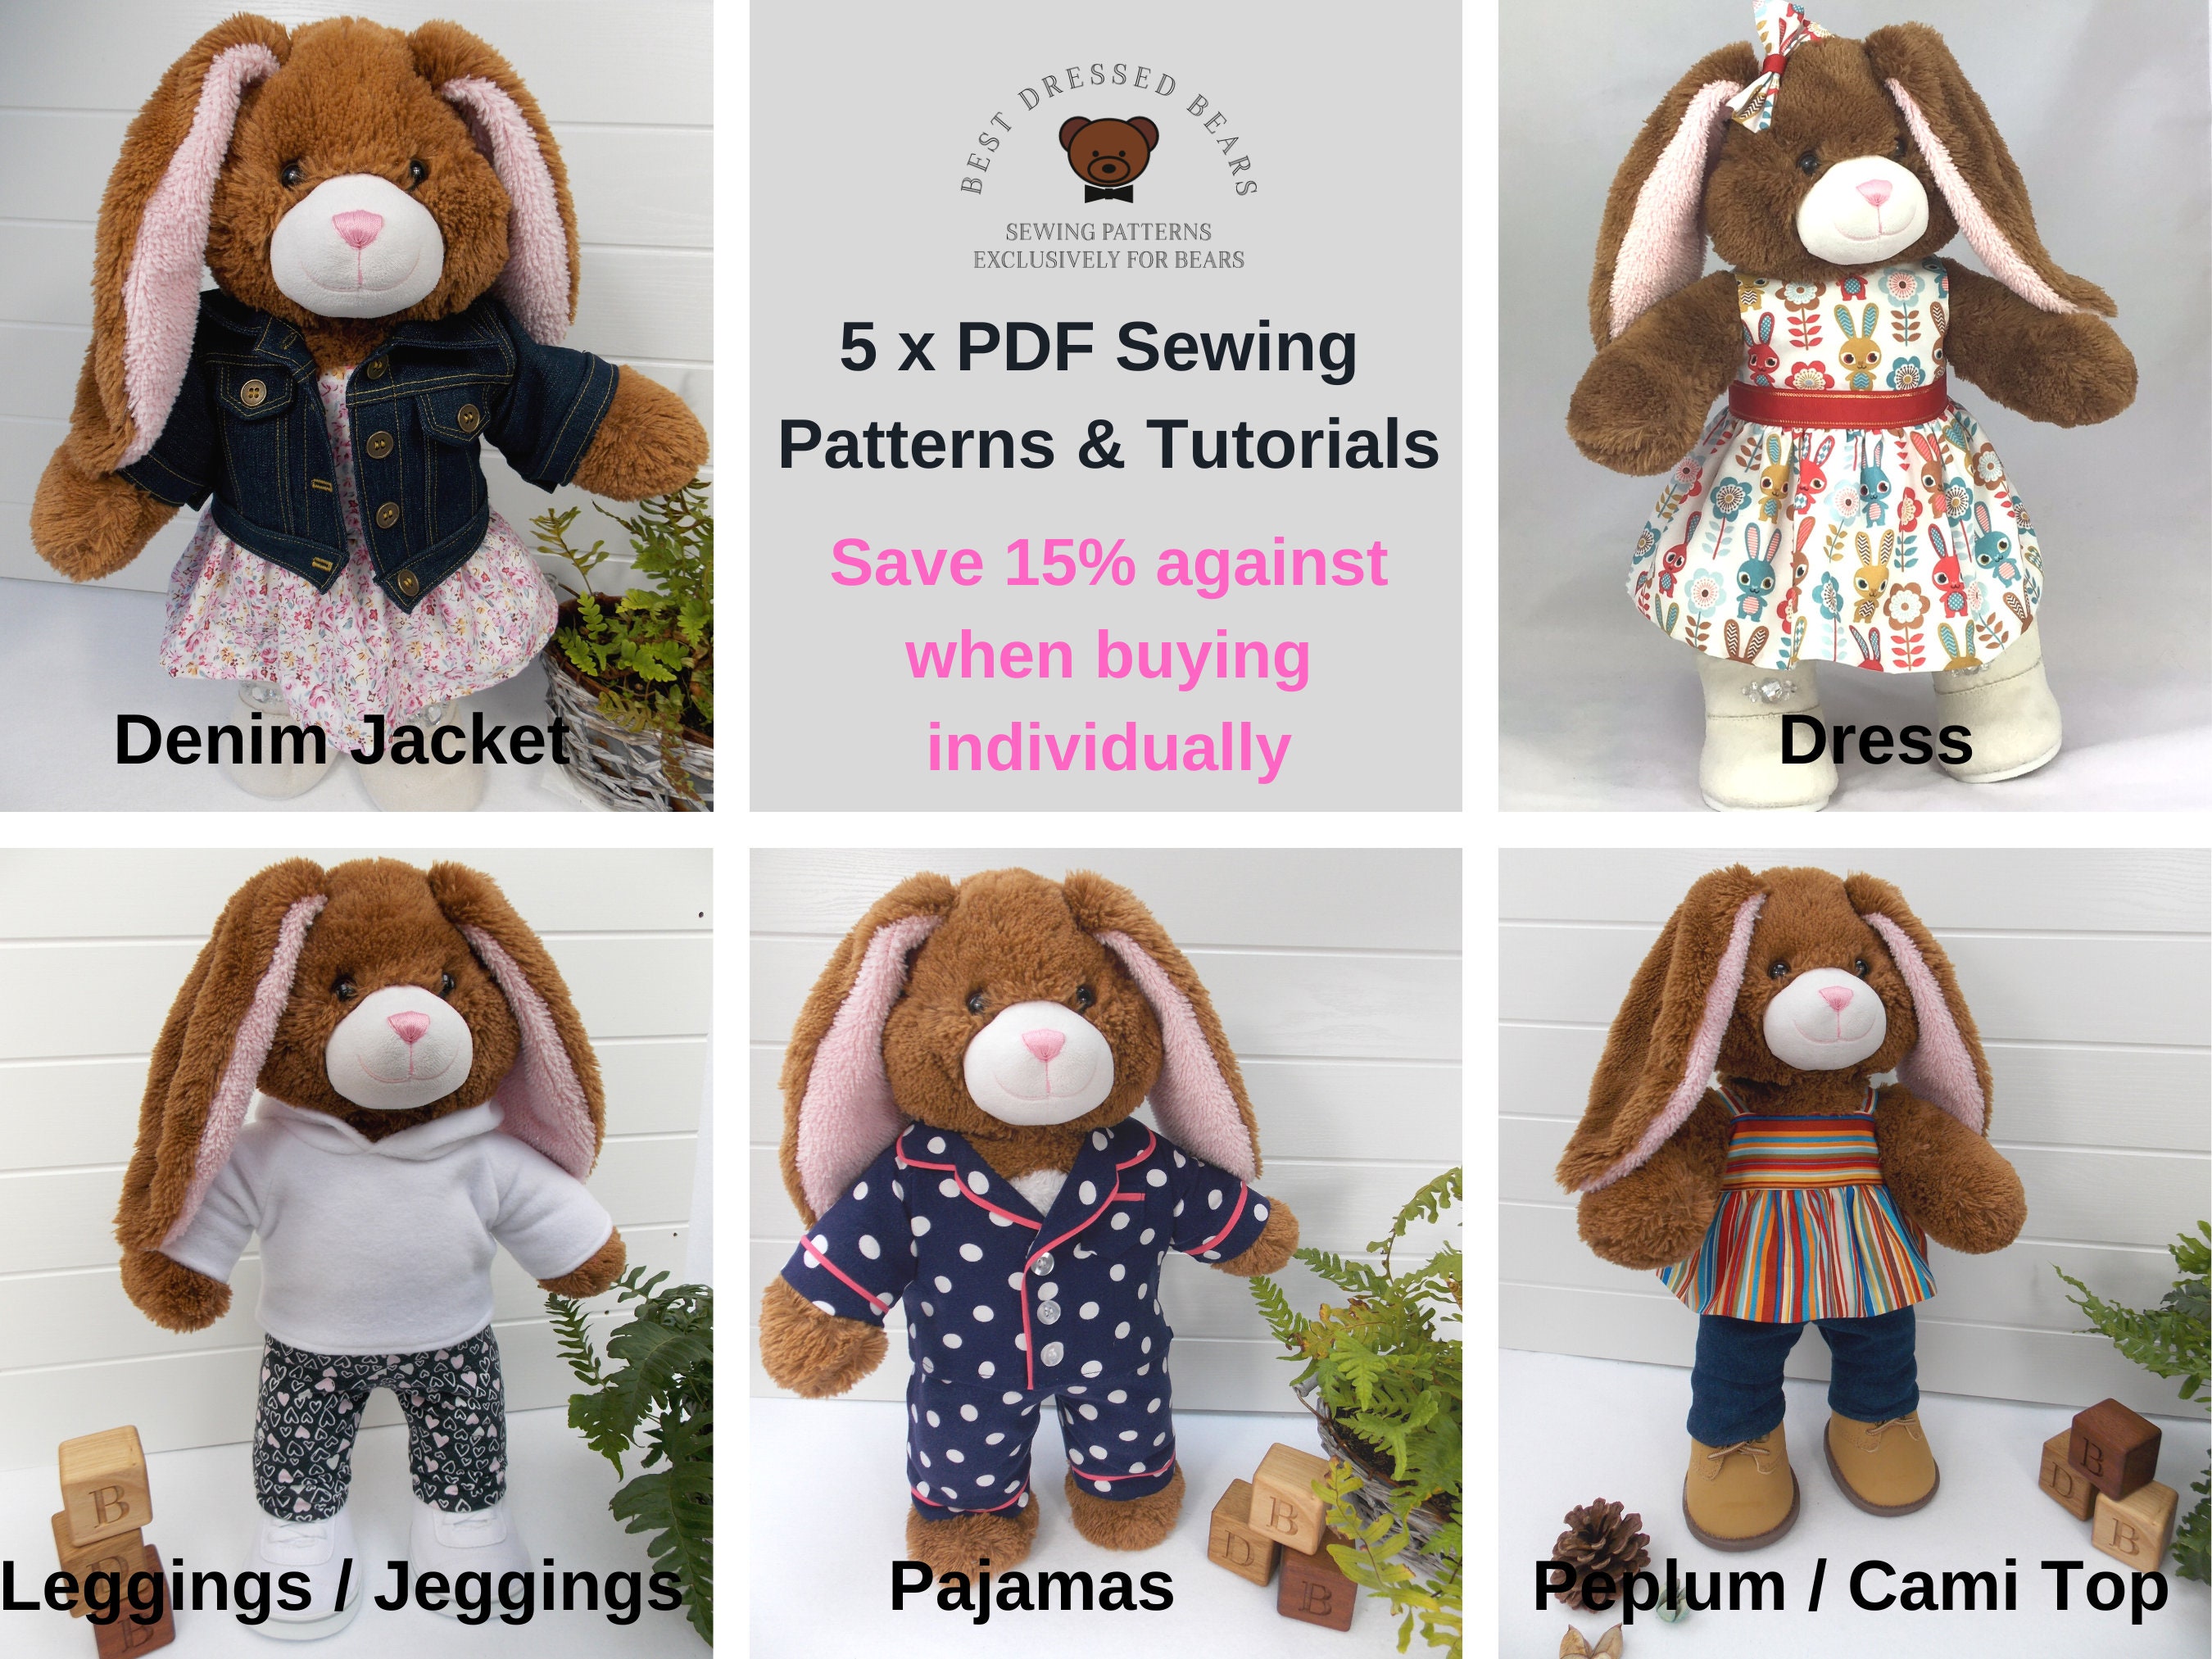 Teddy Bear Polo Shirt PDF Pattern Fits 15-18 Inch Teddy 